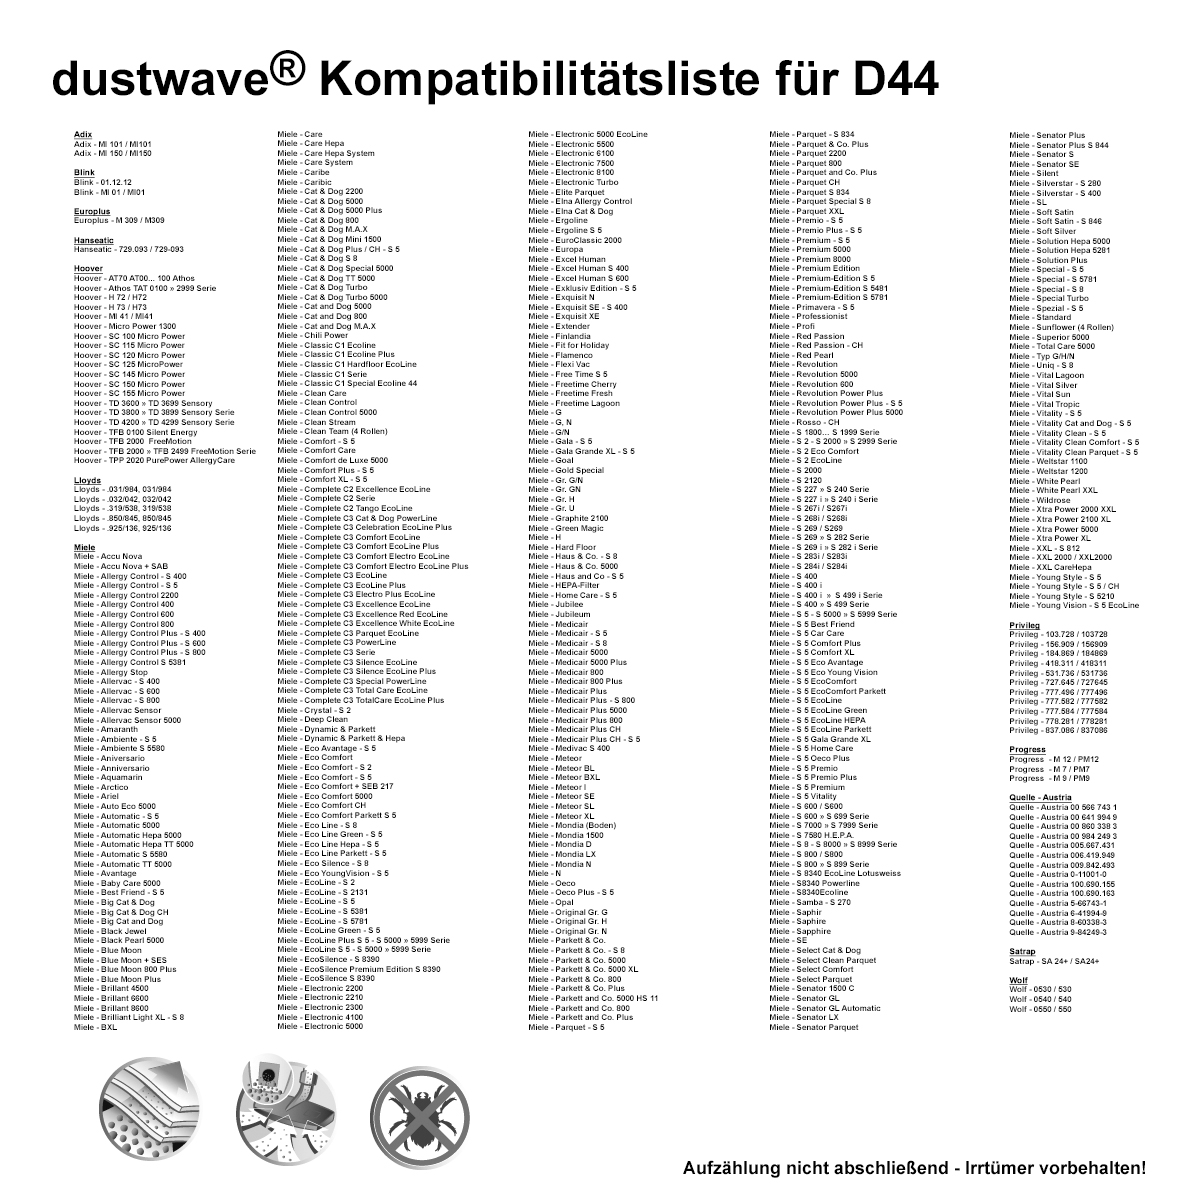 Dustwave® 5 Staubsaugerbeutel für Miele S5510 / S 5510 - hocheffizient, mehrlagiges Mikrovlies mit Hygieneverschluss - Made in Germany